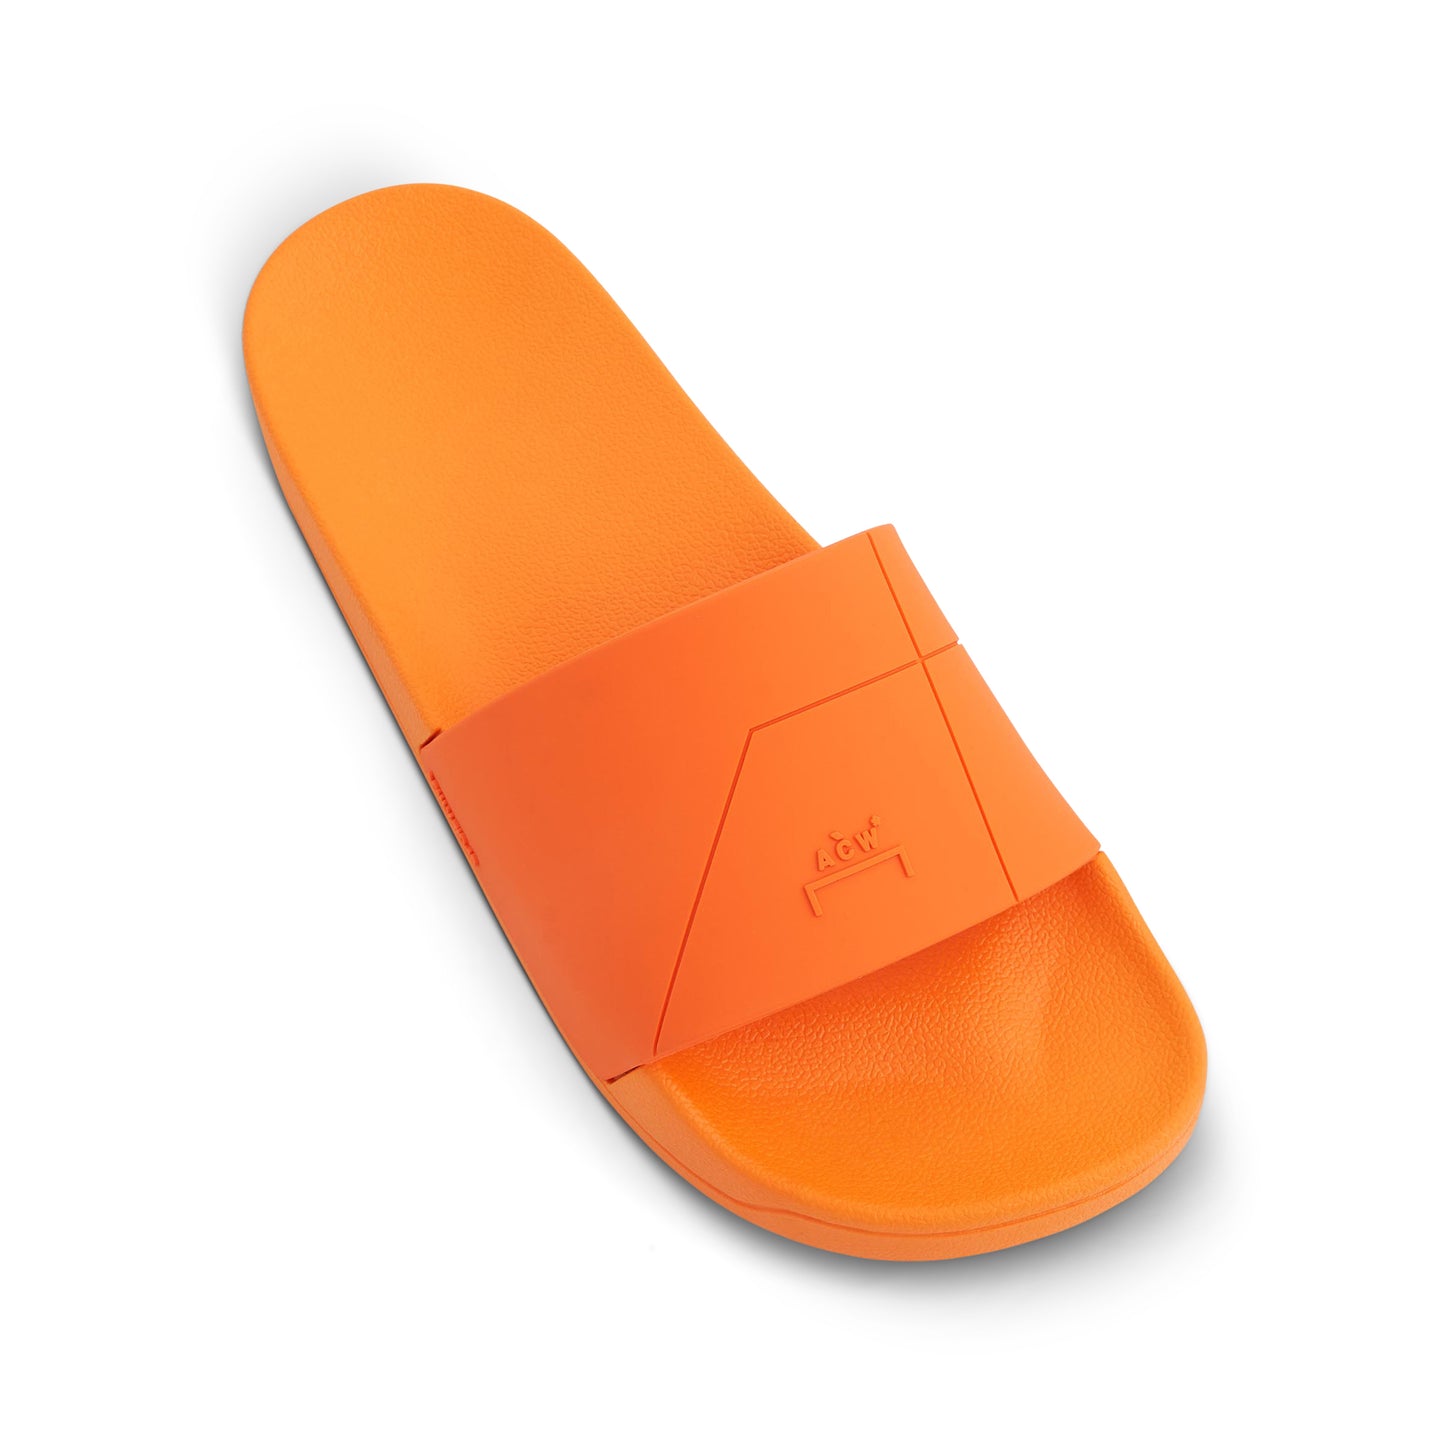 Essential Slides in Bright Orange